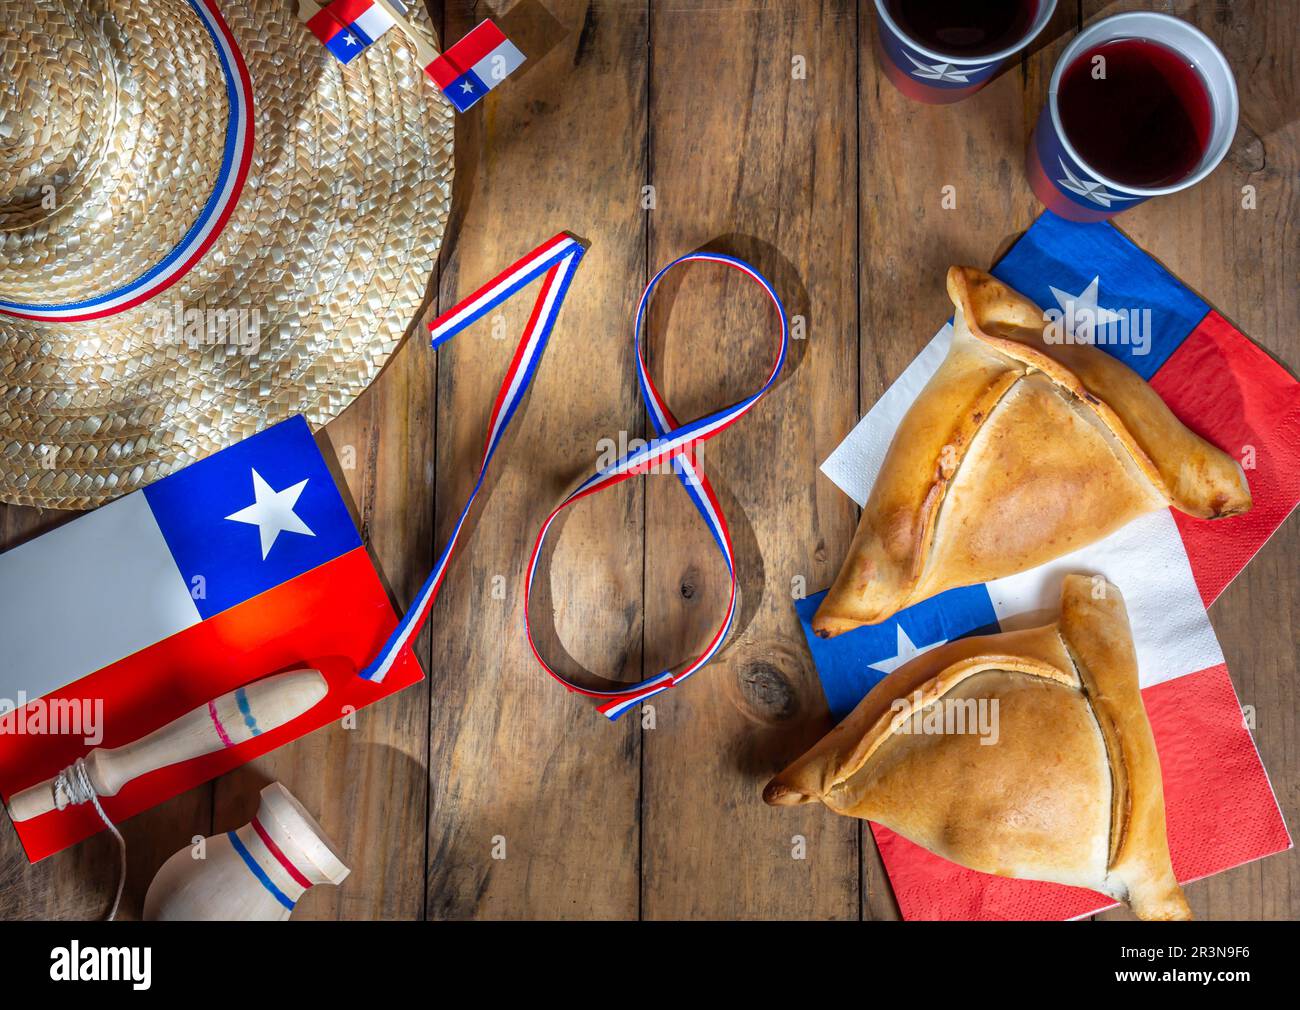 Concetto di giorno di indipendenza del Cile. fiestas patrias. Empanadas cotti al forno, vino o chicha, grasso e giocare a emboque. Decorazione per Foto Stock